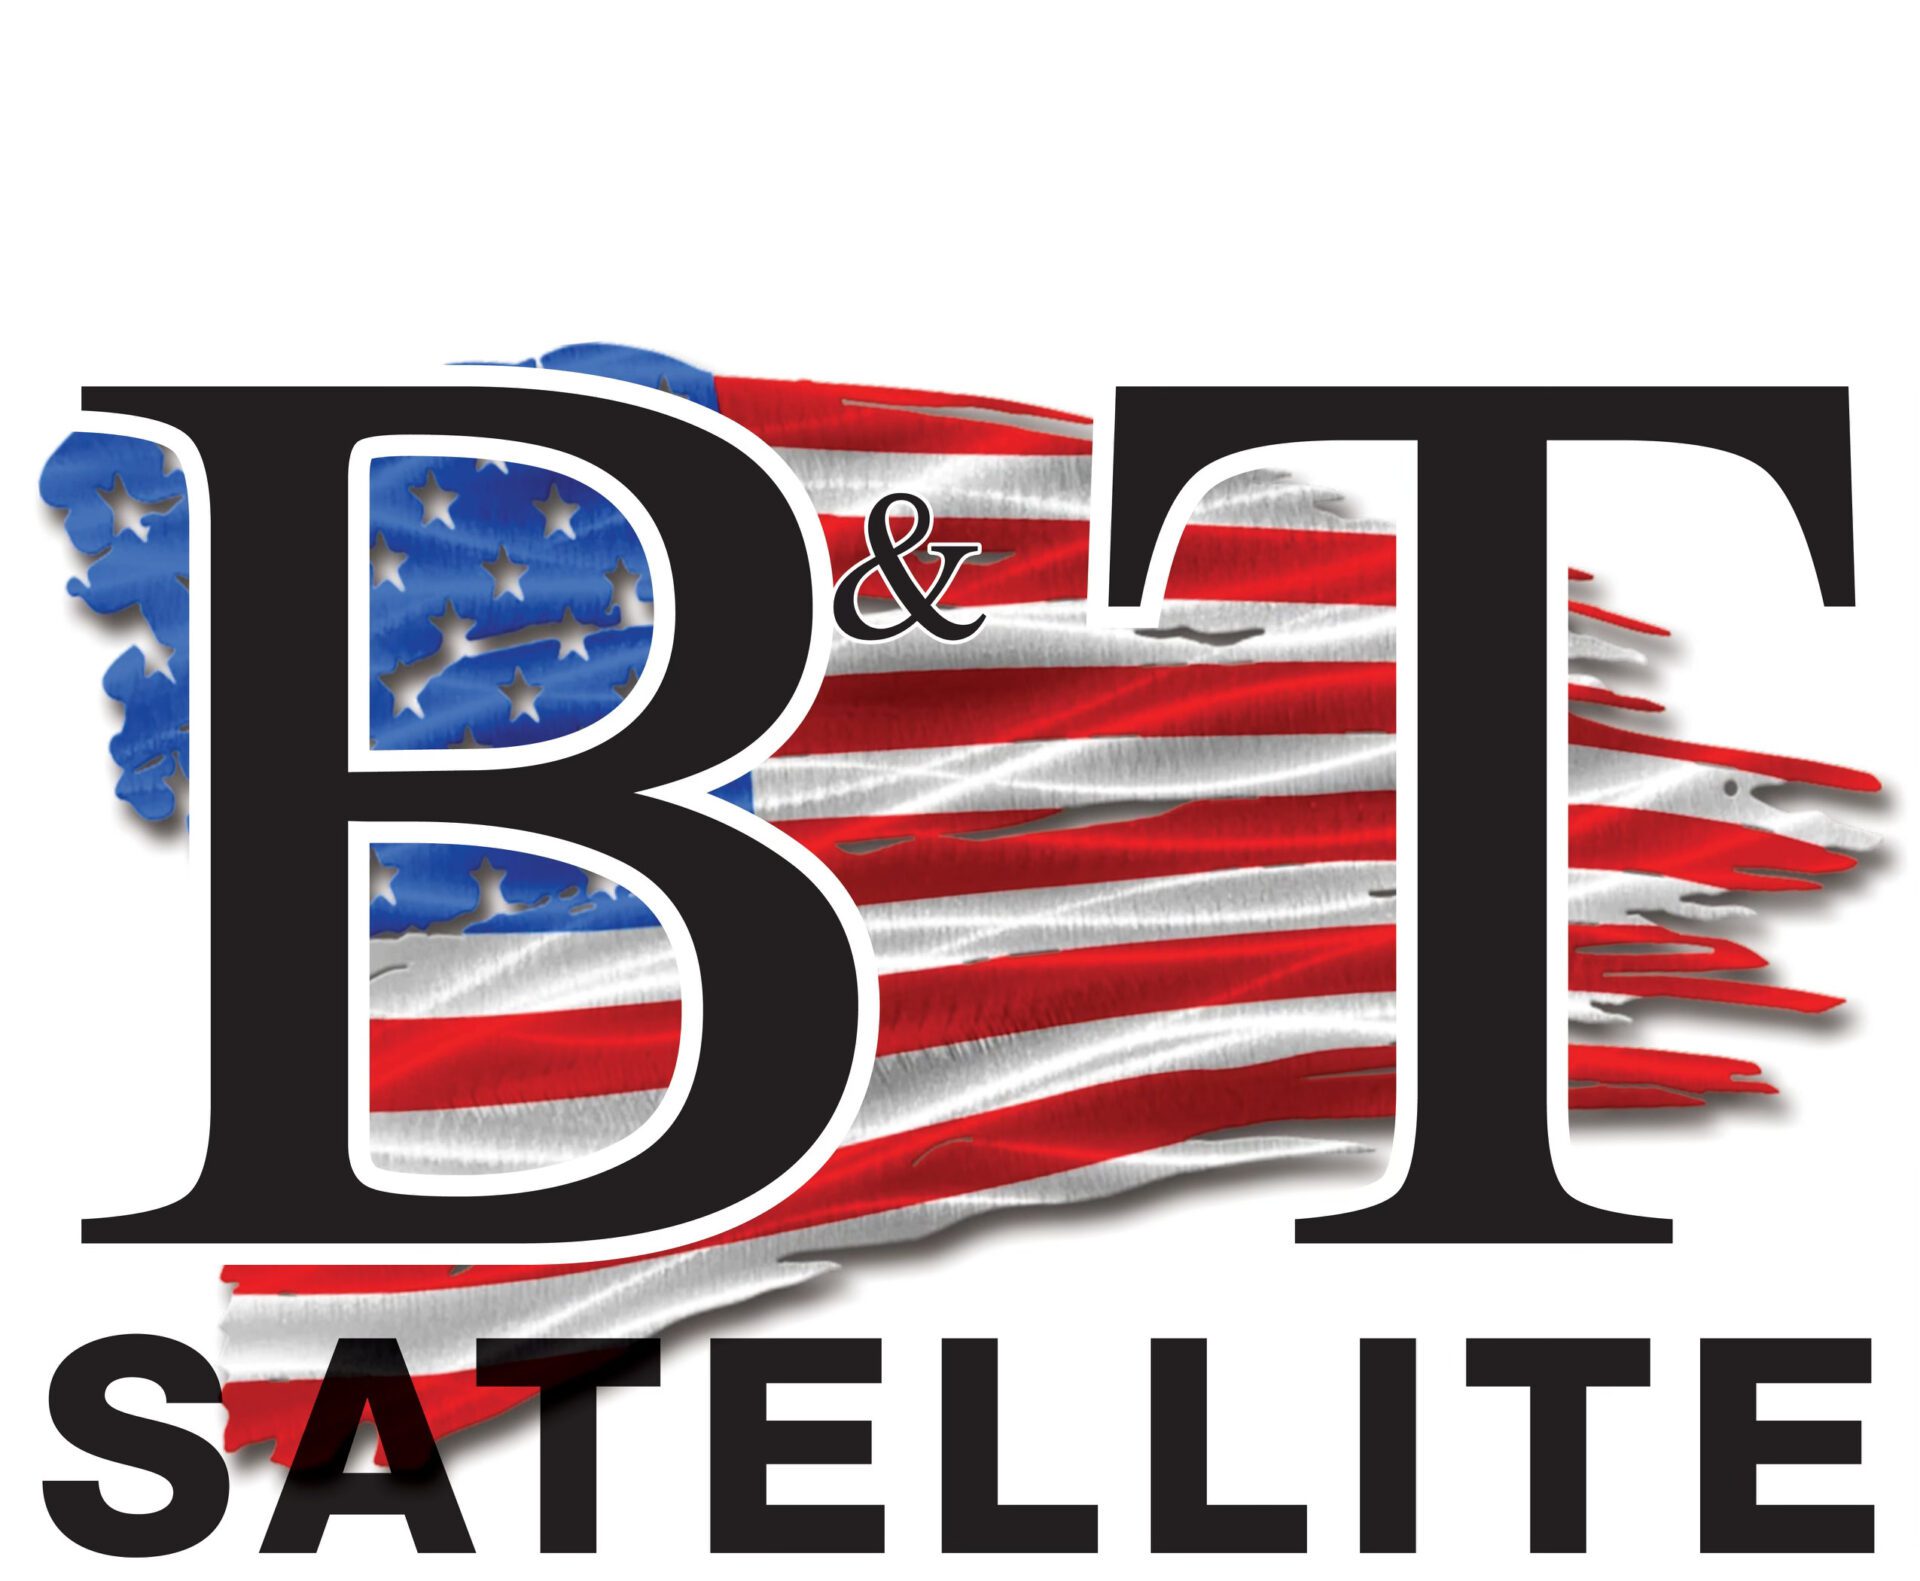 BT Satellite